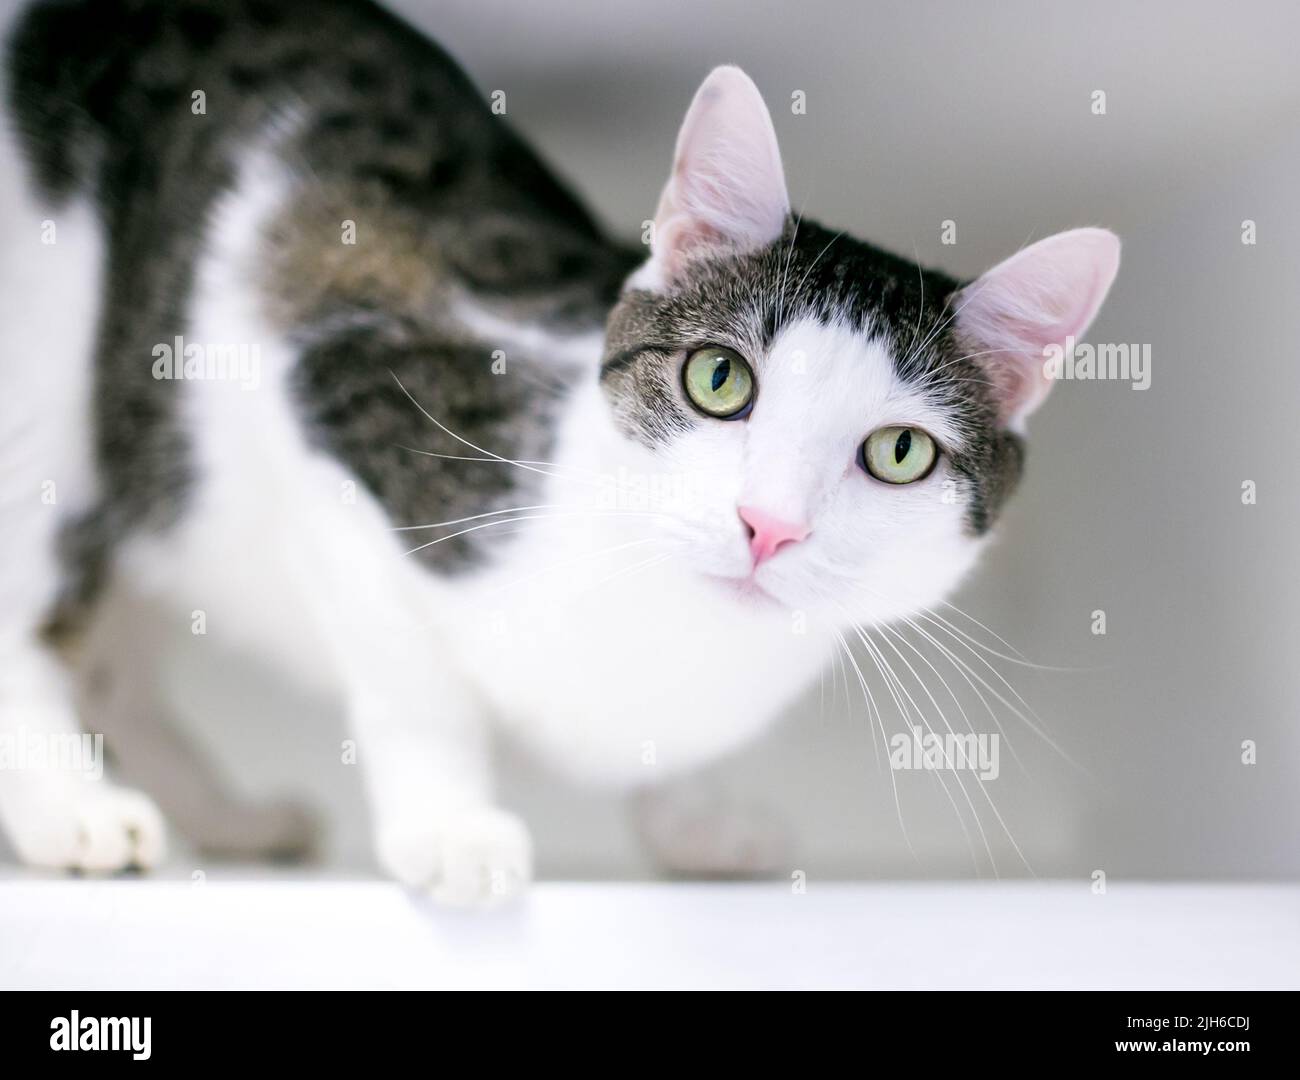 Un gato marrón tabby y blanco shorthair en una posición agachada mirando a la cámara Foto de stock